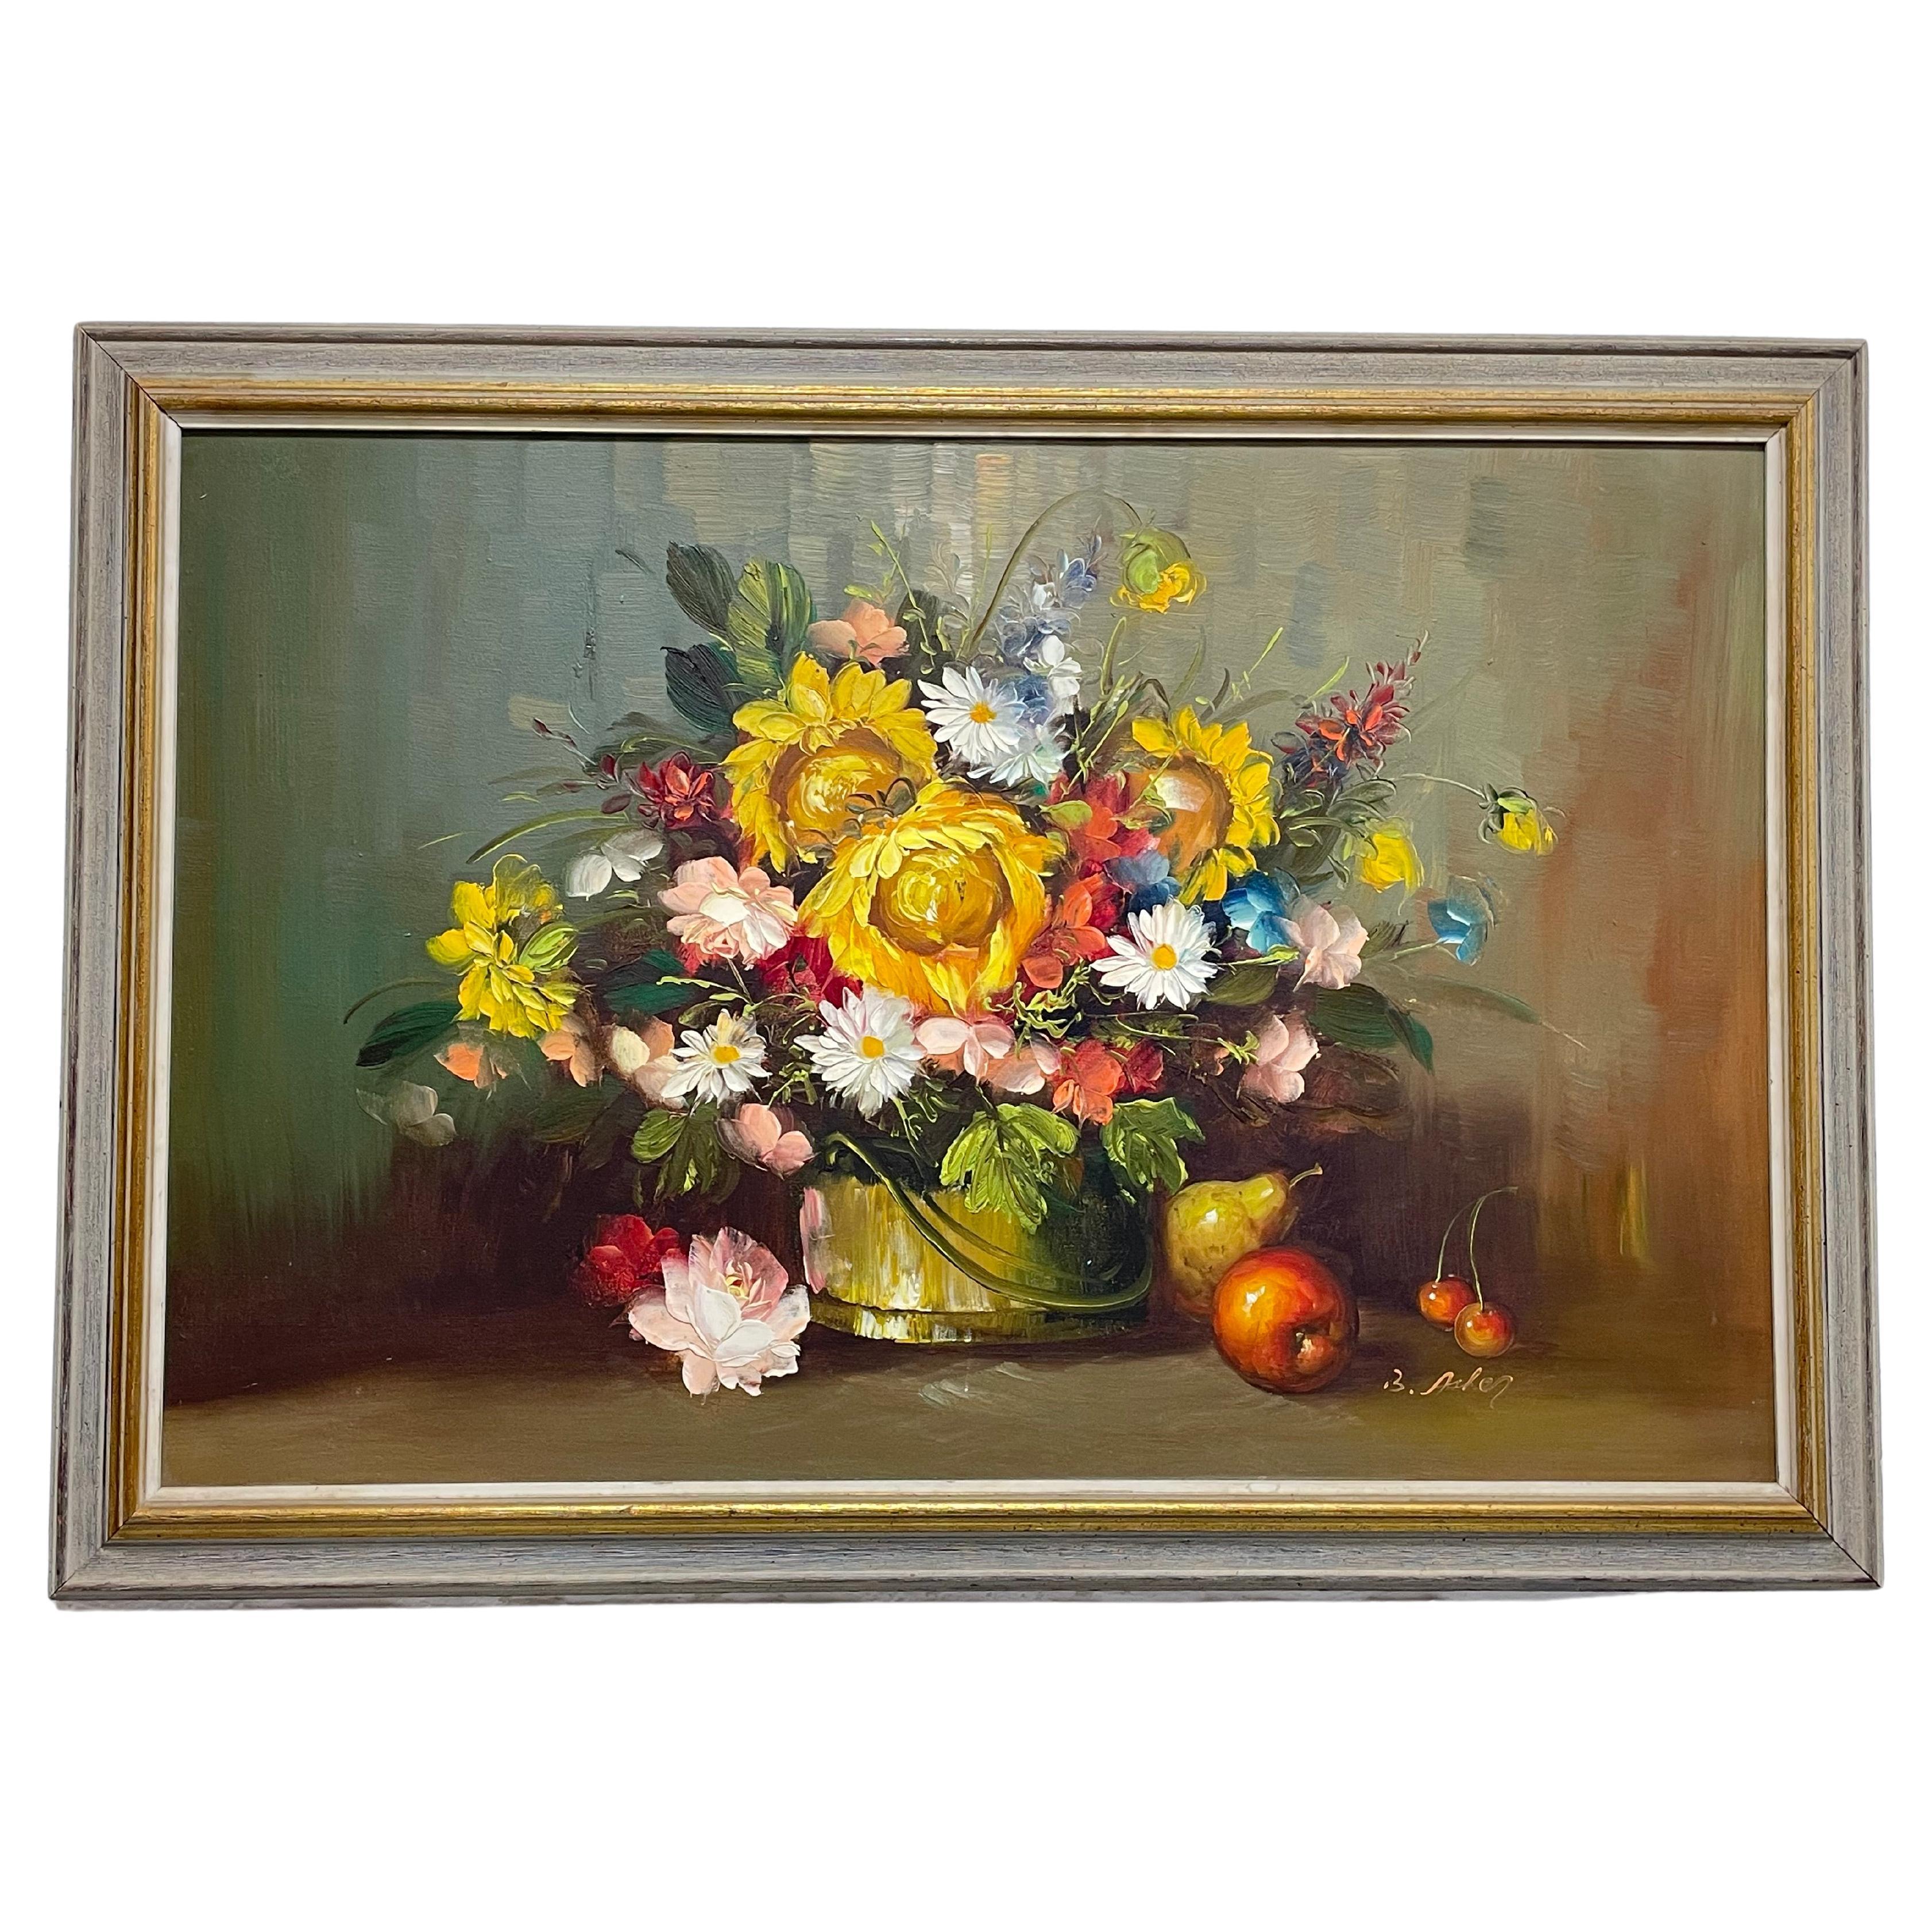 Peinture à l'huile originale signée B. Asher représentant des fleurs lumineuses. Encadré dans un cadre en bois. Fil de suspension le long du dos. 